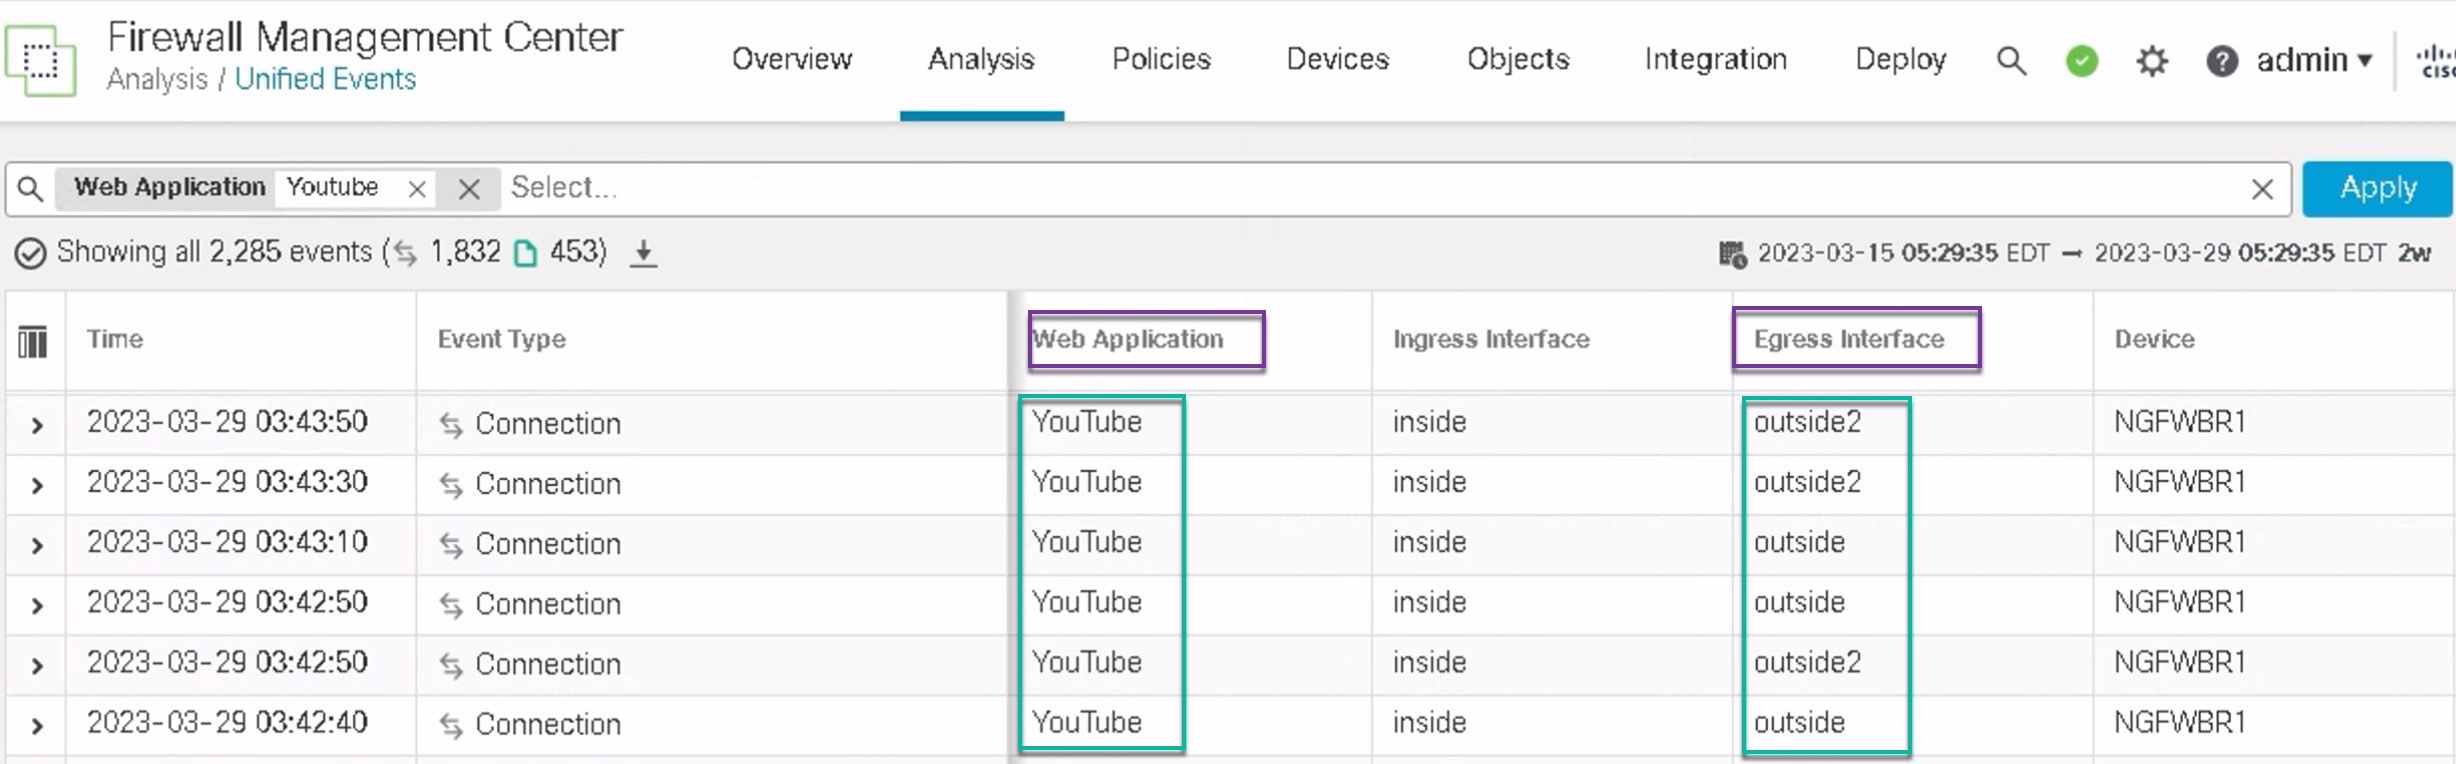 在图中，YouTube 应用流量在“统一事件”(Unified events) 页面上看到的 outside 和 outside2 接口之间进行了负载均衡。